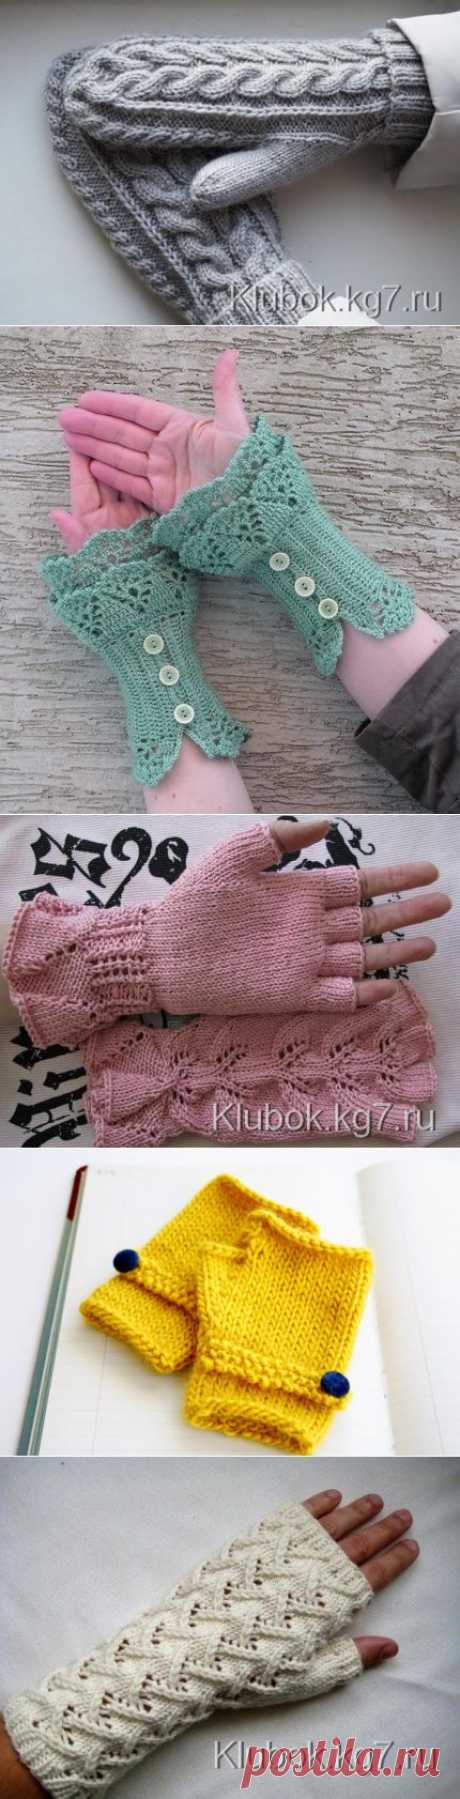 Митенки, перчатки, рукавички | Клубок